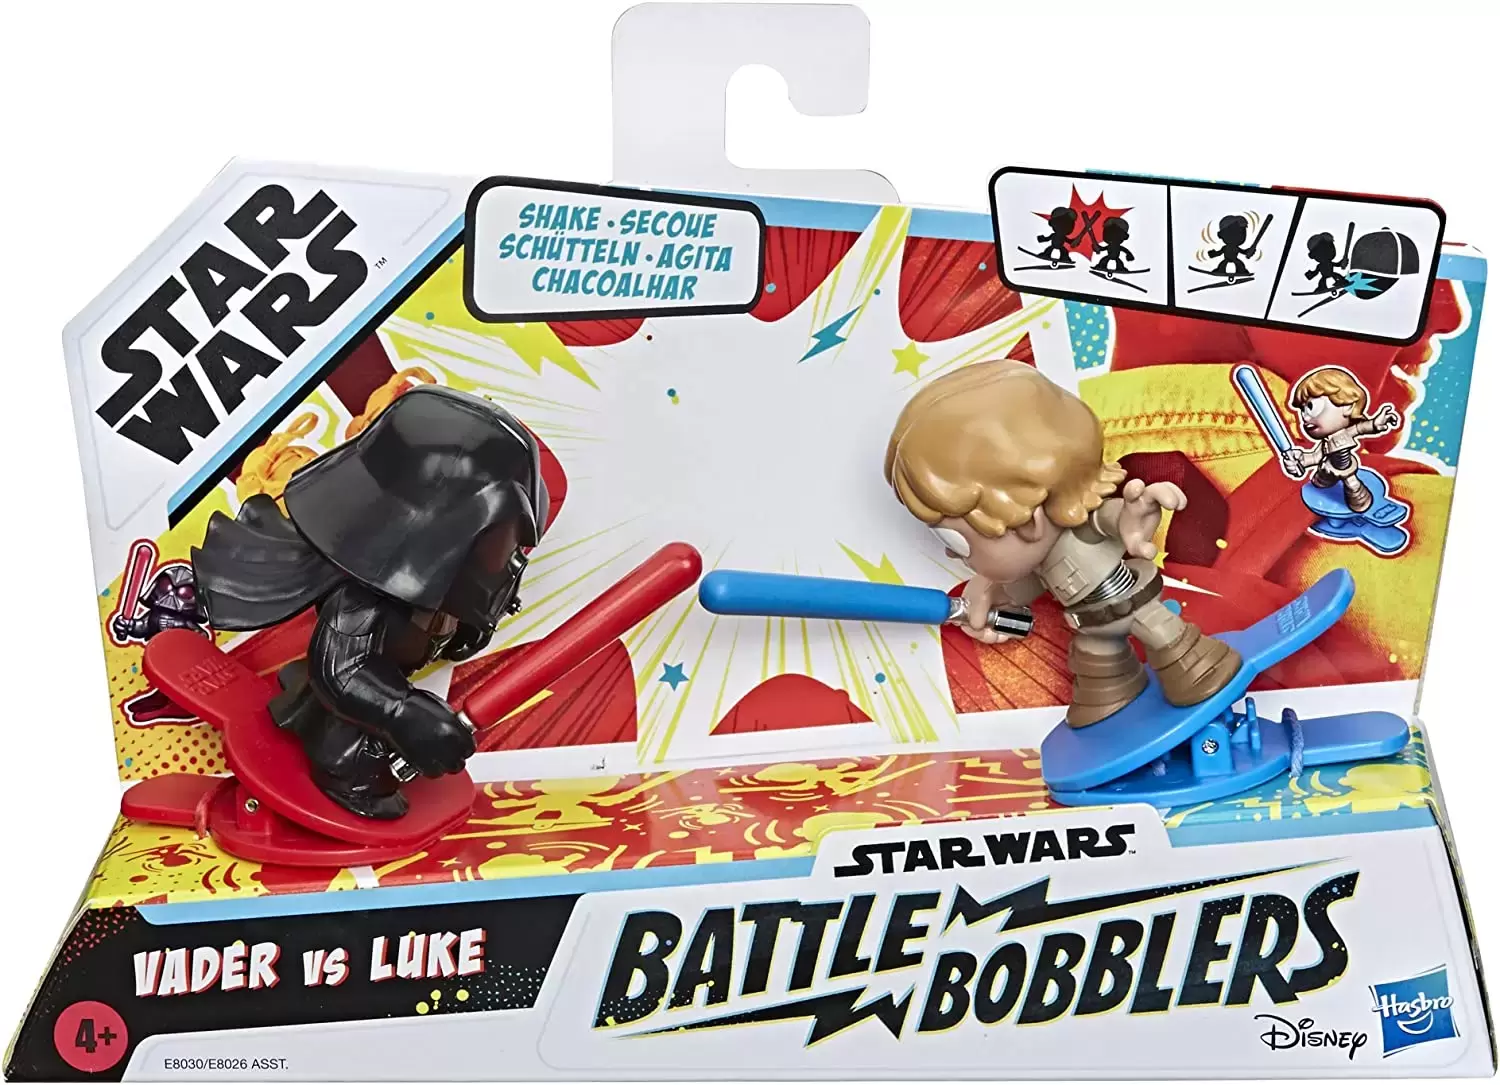 Star Wars Battle Bobblers - Vader vs Luke